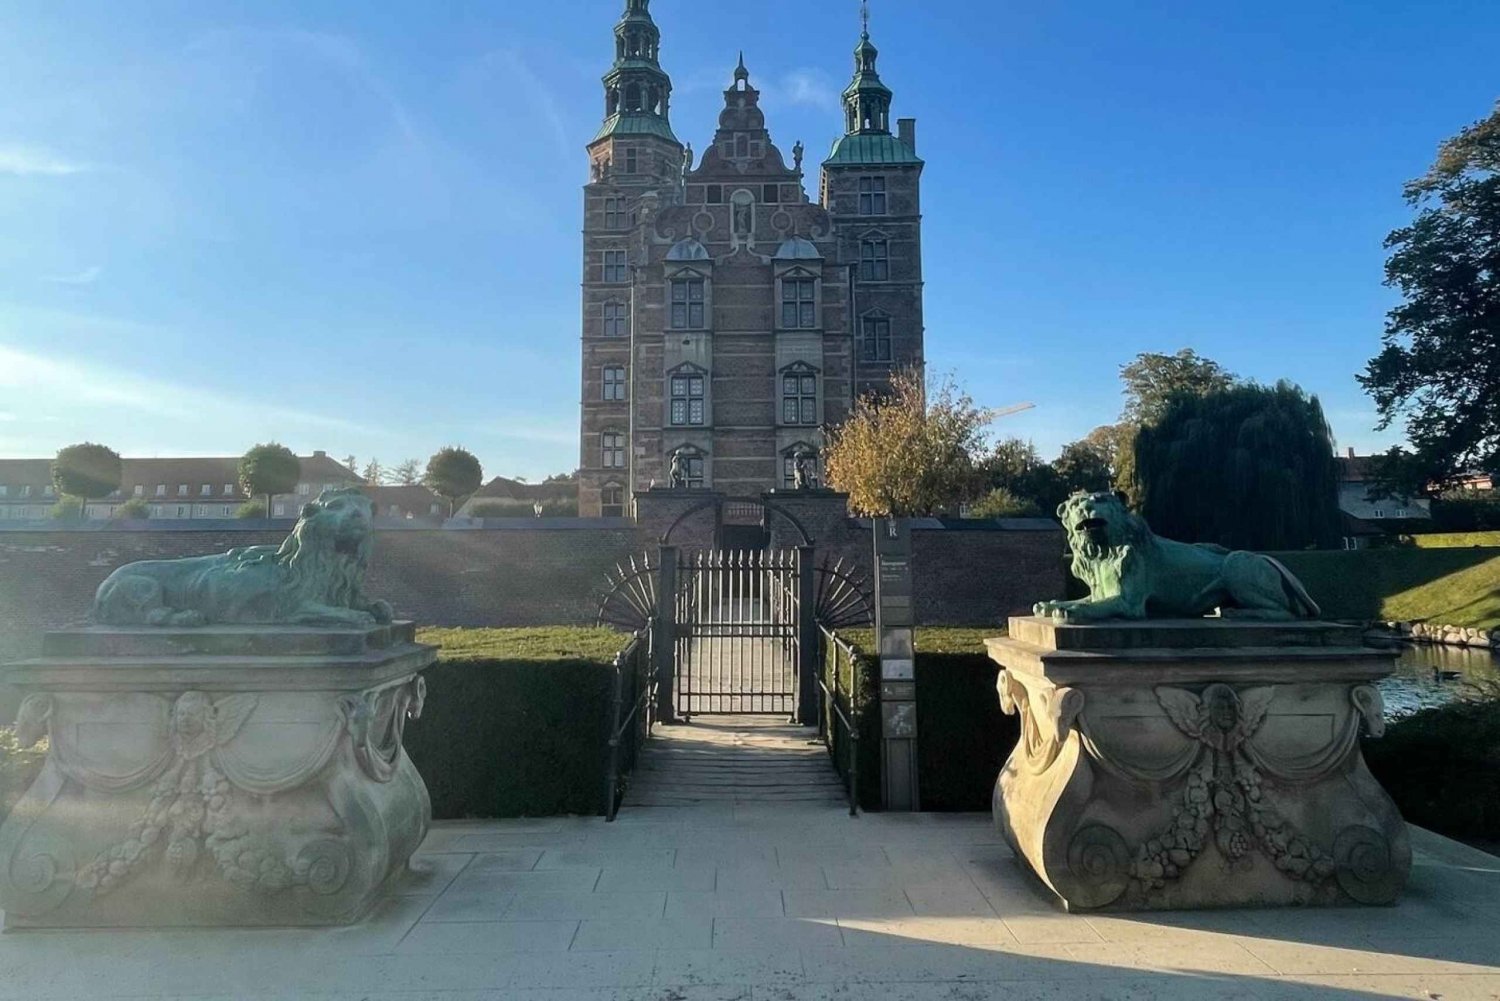 Copenhague: King's Garden Outdoor Escape Room Game